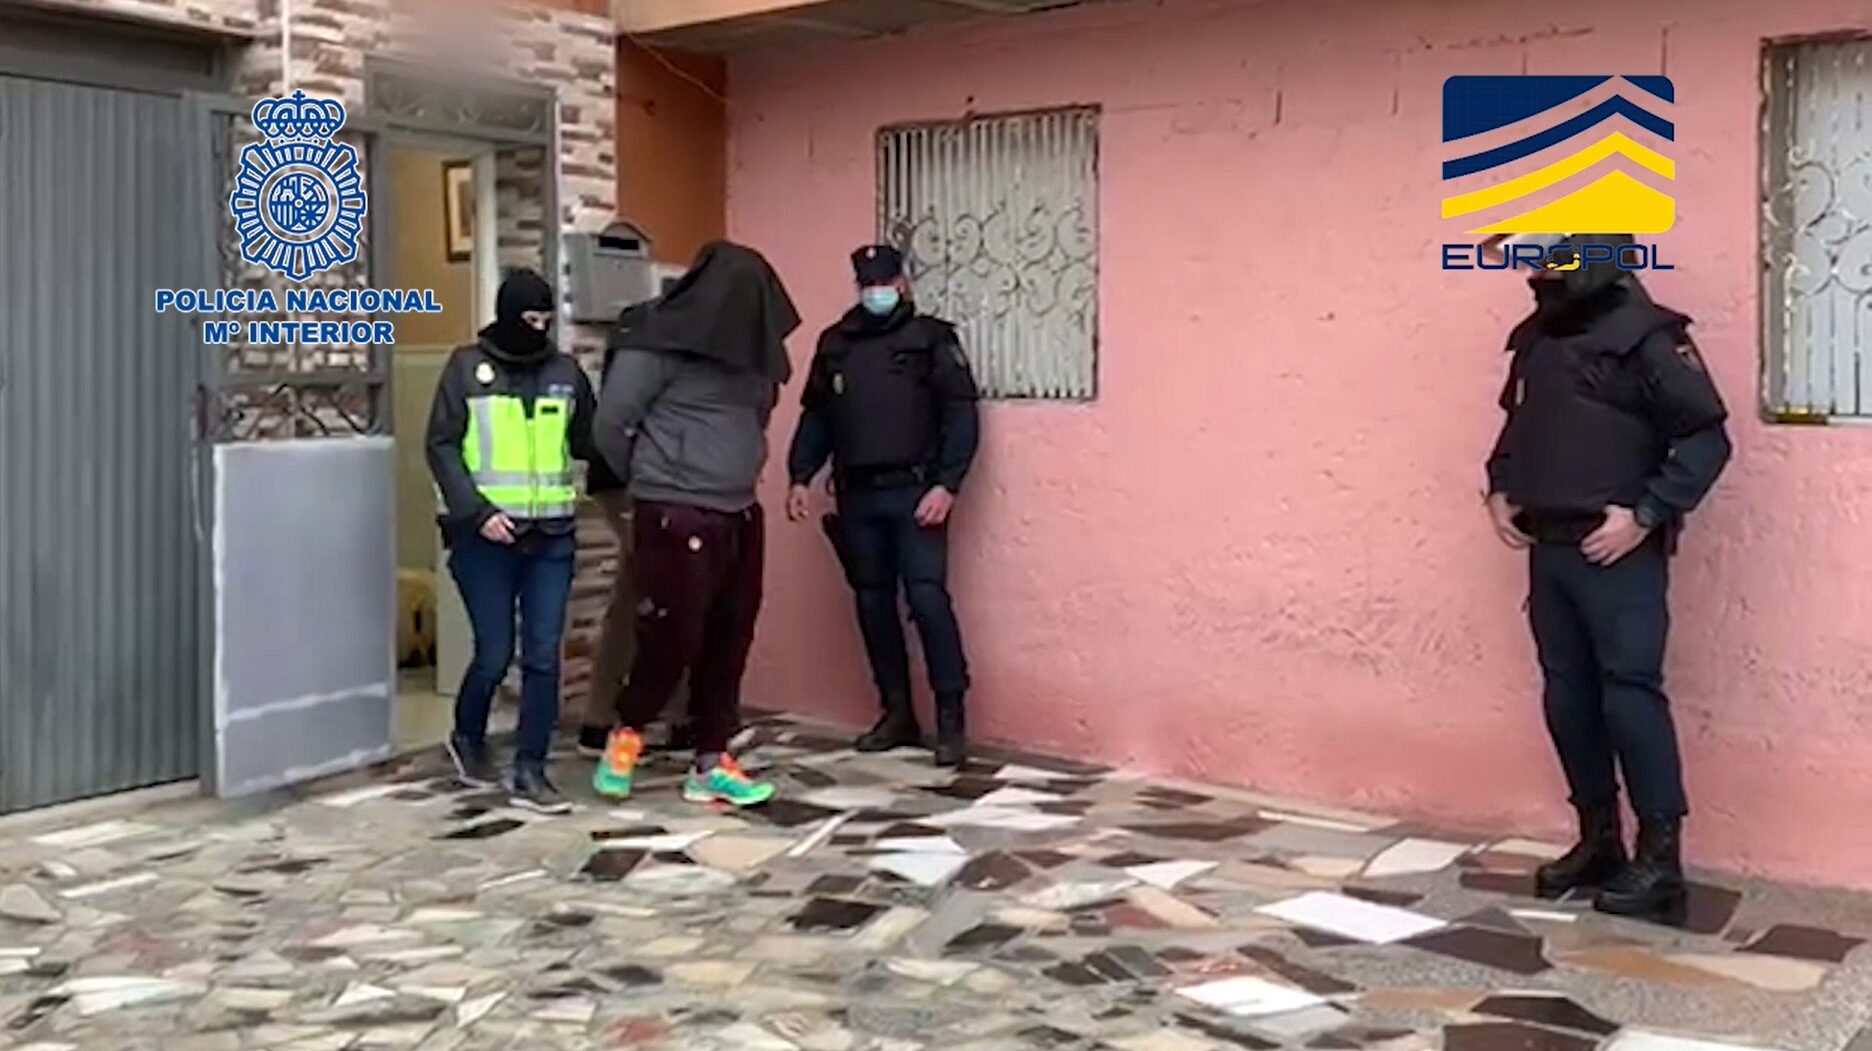 Detención de uno de los individuos acusados de yihadismo en Melilla